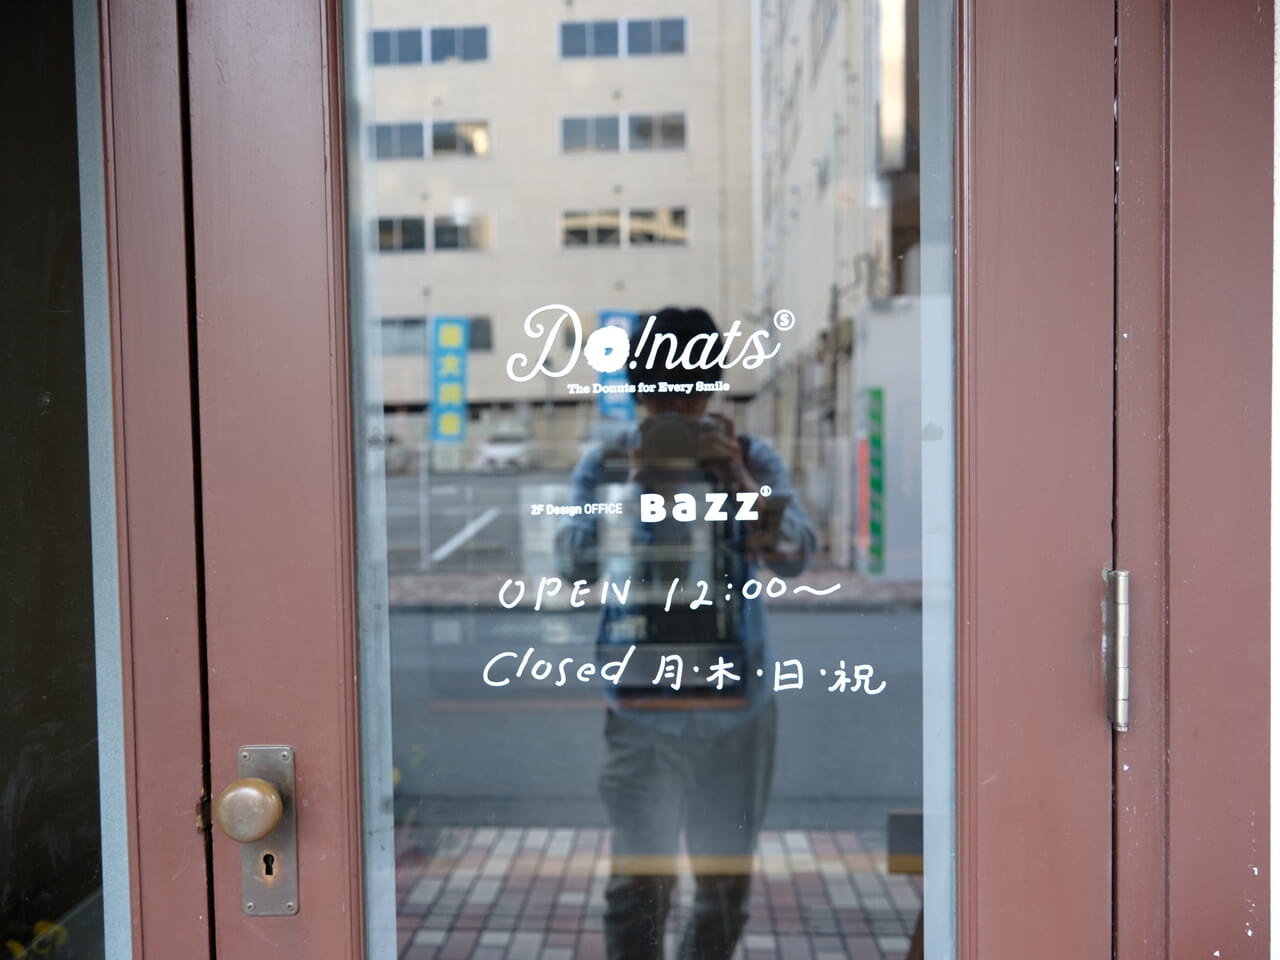 甲府市の桜町通りにあるcafe-do!natusの入り口のドアに開店時間と開店曜日が記載してある